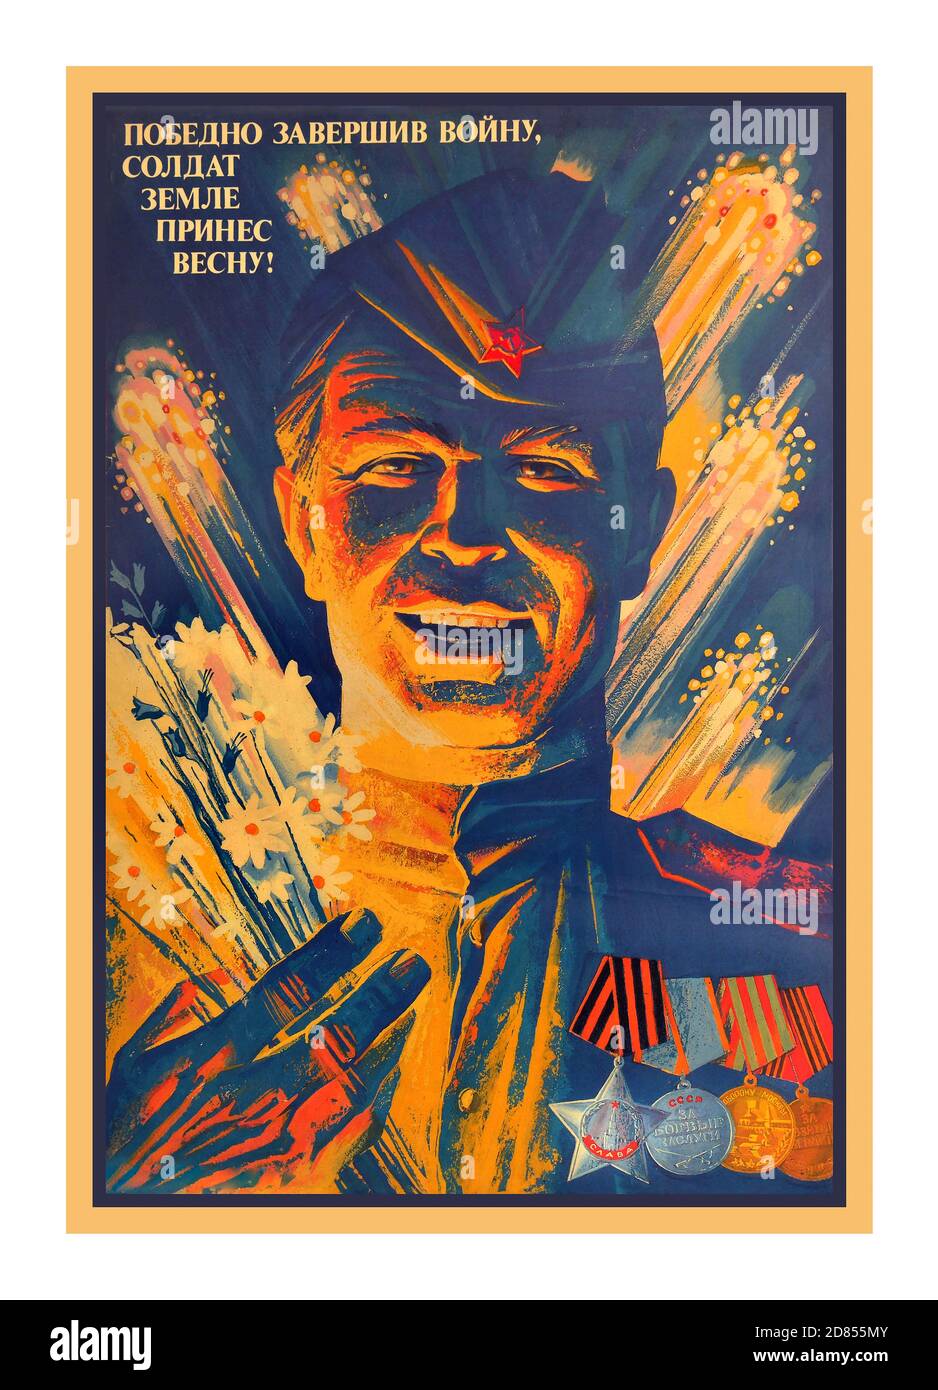 VICTORY DAY 1945 sowjetischen Vintage Propaganda-Plakat in der Sowjetunion für die Feierlichkeiten zum Victory Day ausgegeben. Sowjetischer Soldat mit Medaillen, Feuerwerk im Hintergrund und Text: Soldat, der den Krieg siegreich beendete, brachte den Frühling nach Hause! Der Tag des Sieges ist ein Feiertag, der an die Kapitulation Nazi-Deutschlands im Jahr 1945 erinnert. Es wurde erstmals in den 15 Republiken der Sowjetunion eingeweiht, nachdem am 8. Mai 1945 (nach Mitternacht, also am 9. Mai Moskauer Zeit) das deutsche Kapitulationsinstrument am späten Abend unterzeichnet wurde. Die Sowjetregierung verkündete den Sieg Anfang des 9. Mai 1945 Stockfoto